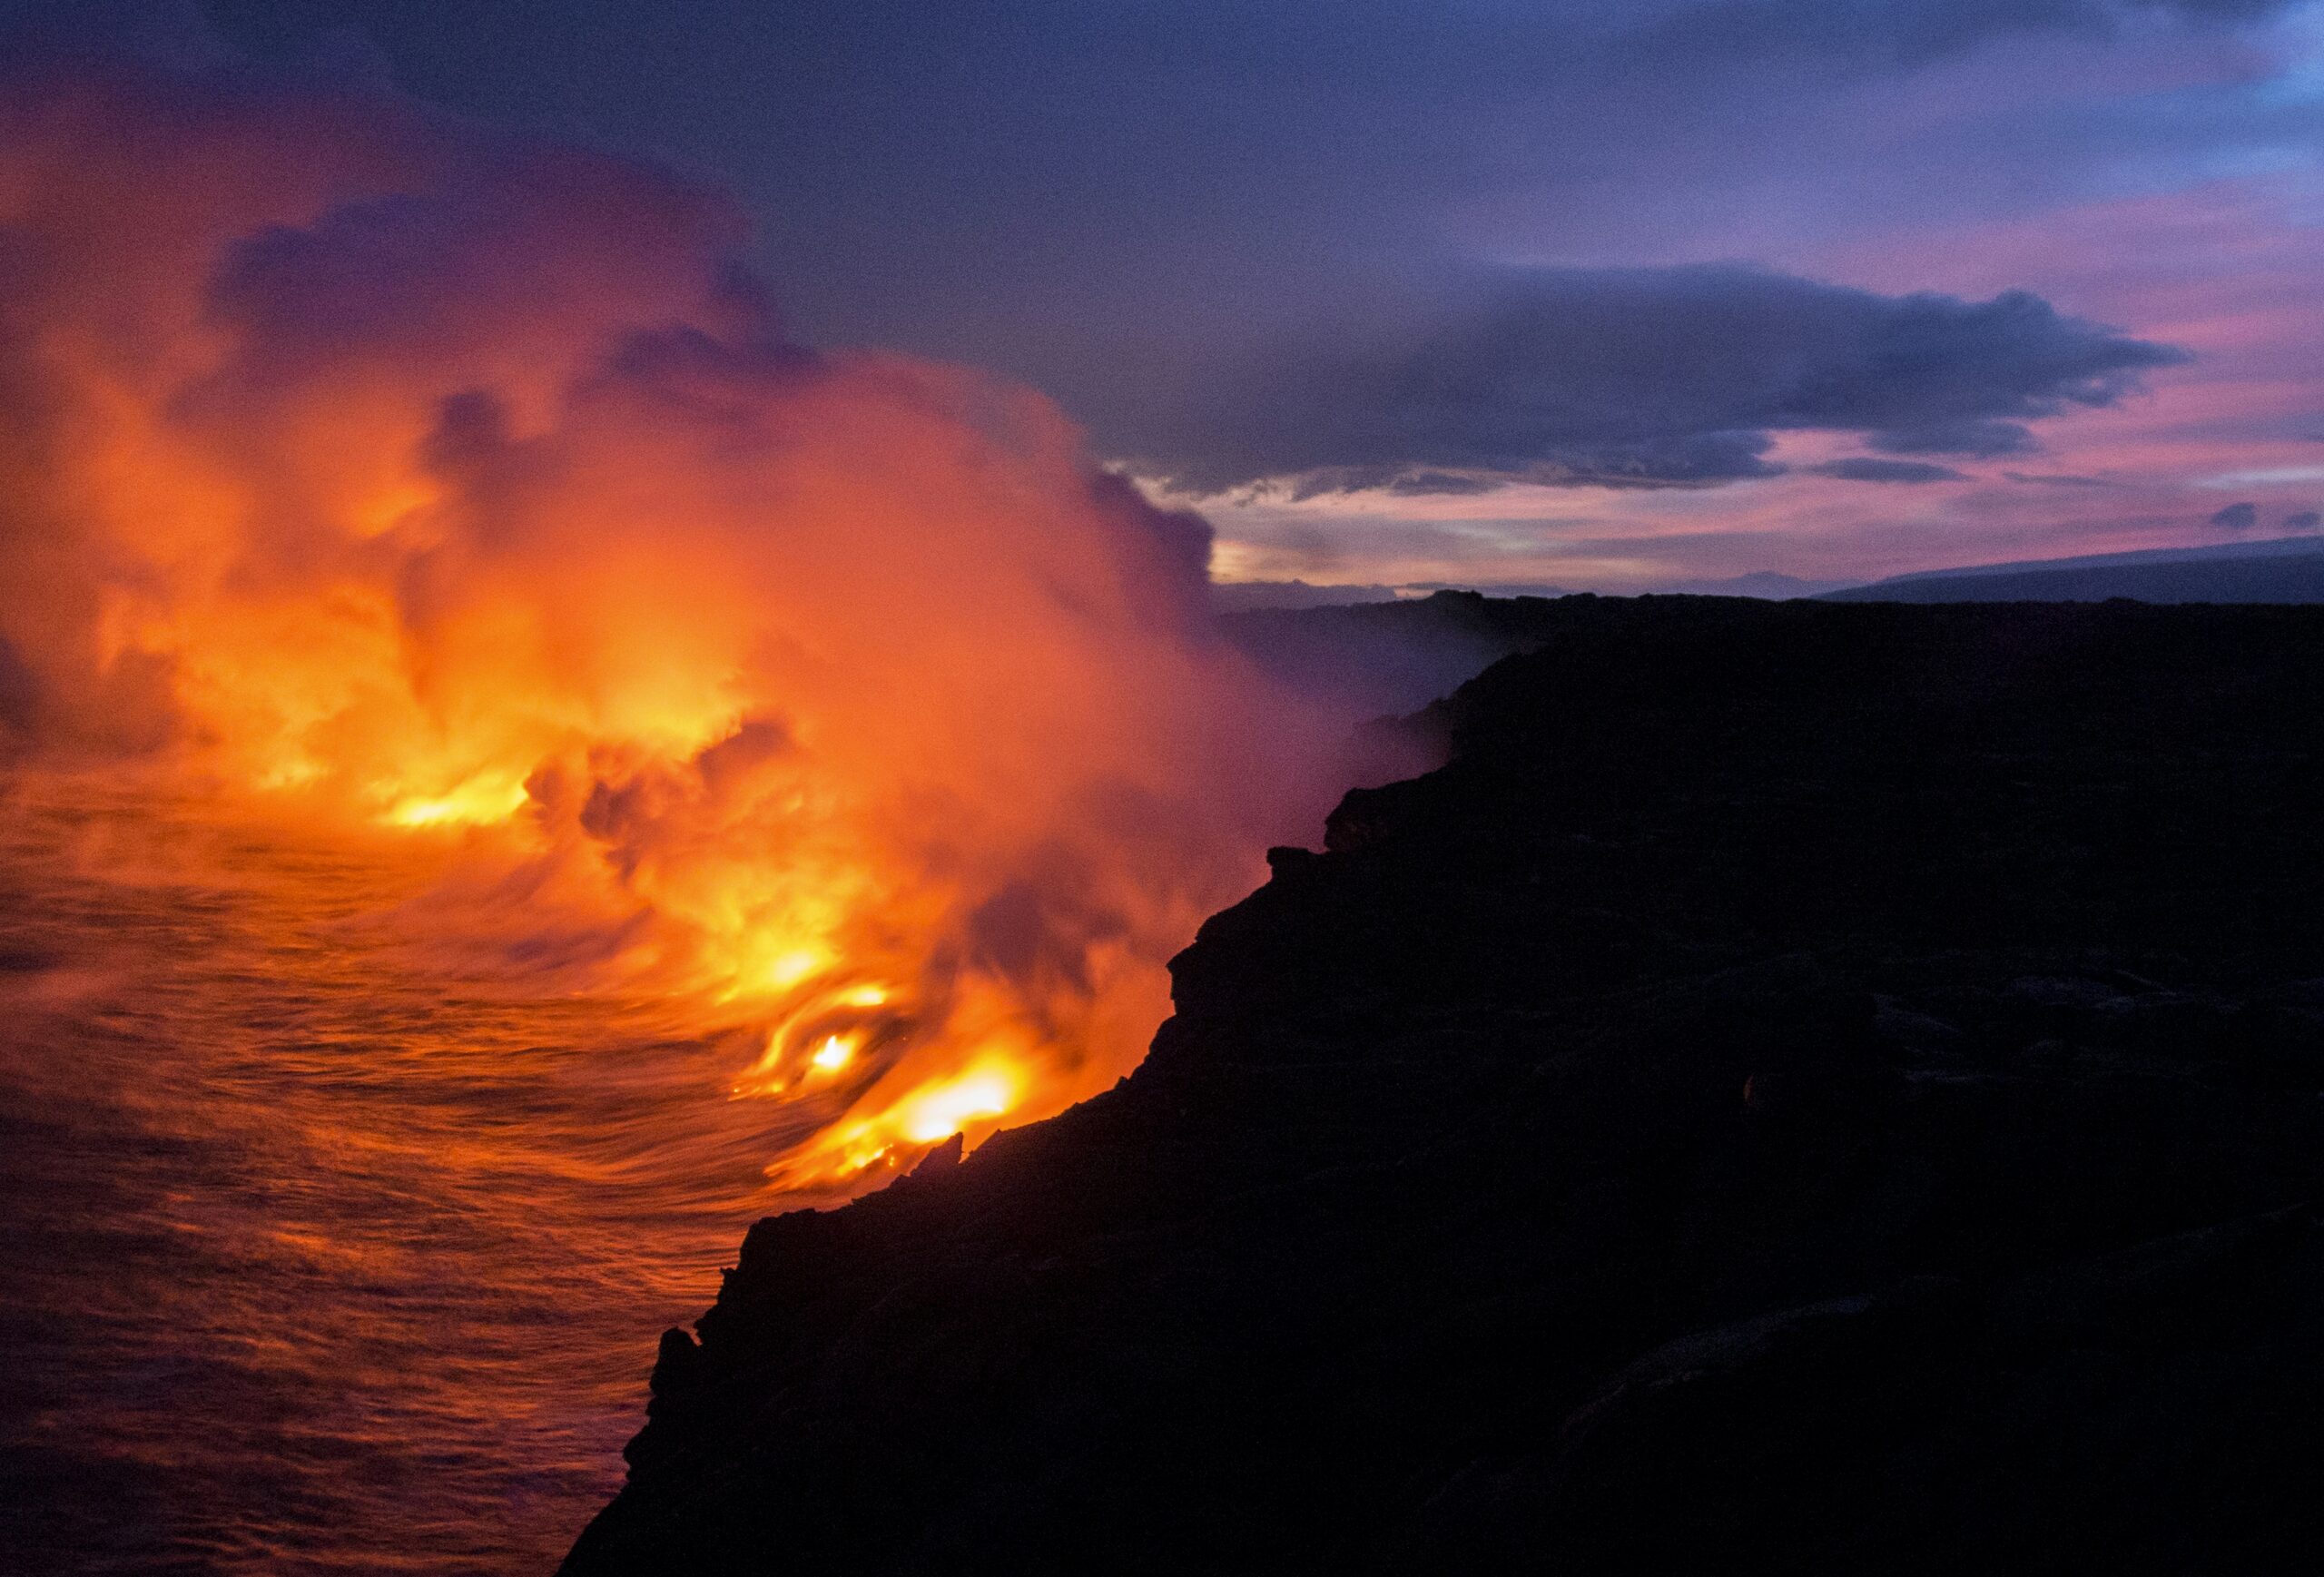 How Can I Prepare For A Volcanic Eruption Evacuation Advisory?